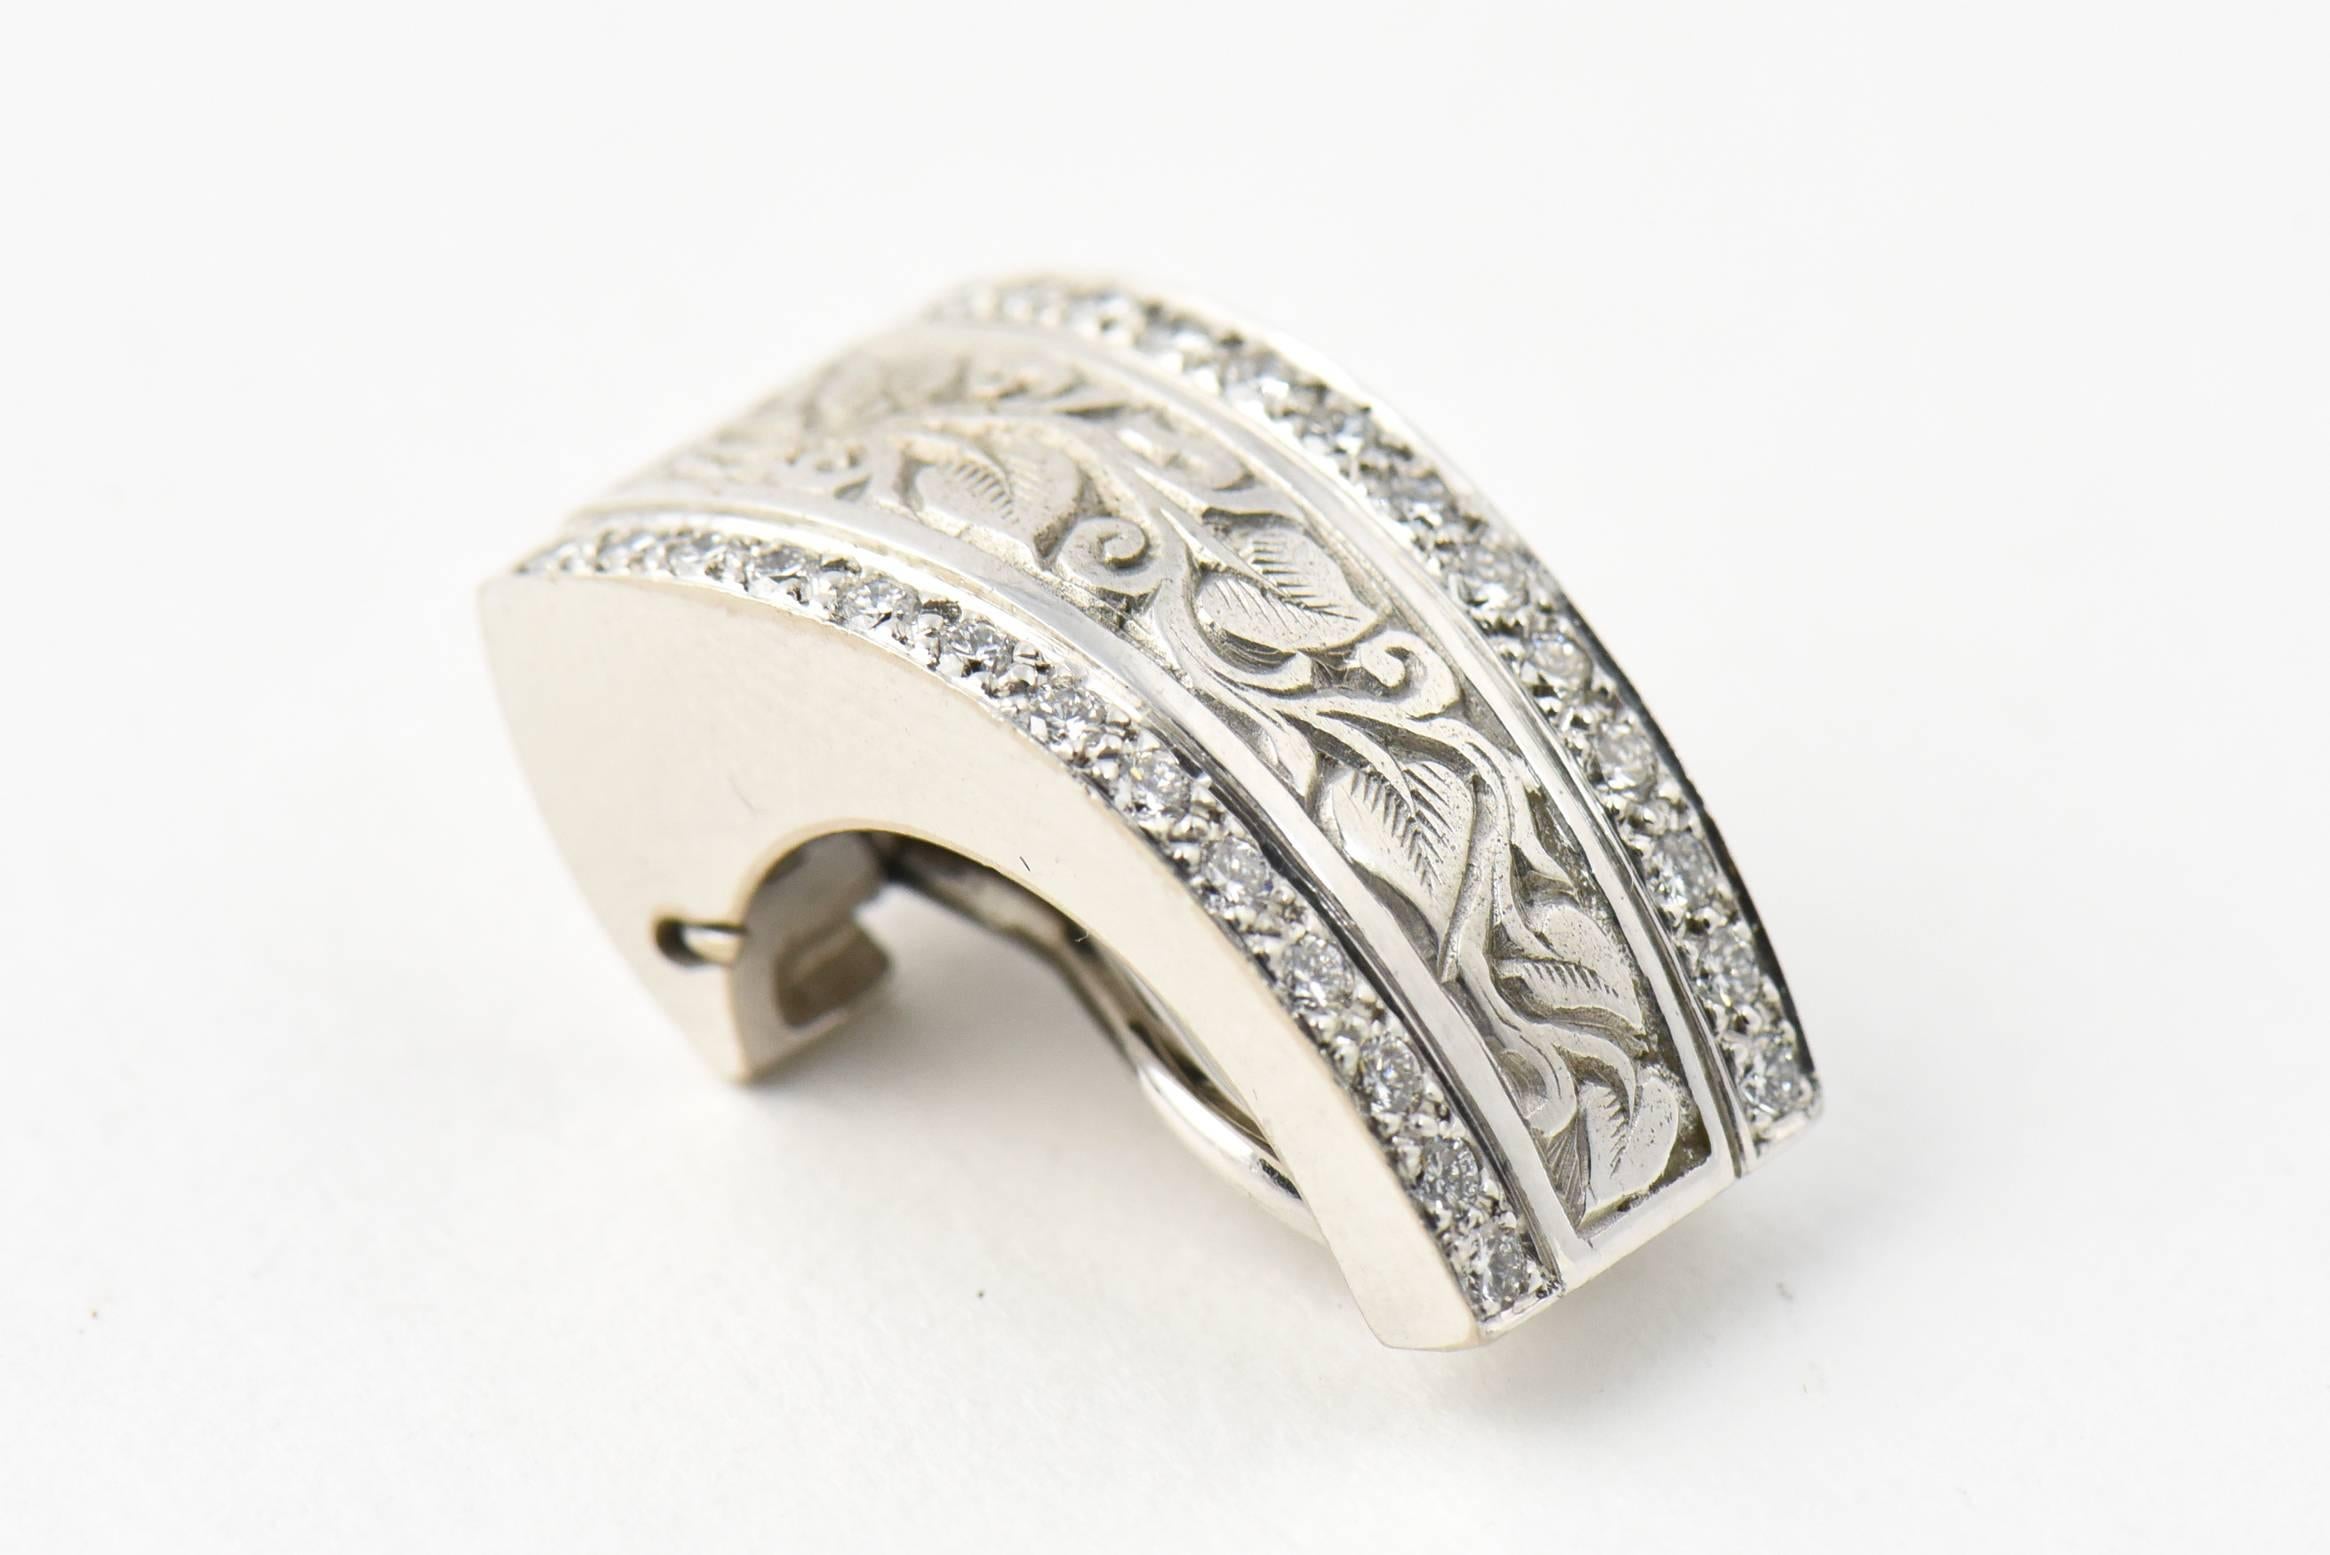 Engraved Vine Design Gold Earrings with Diamond Edges 2